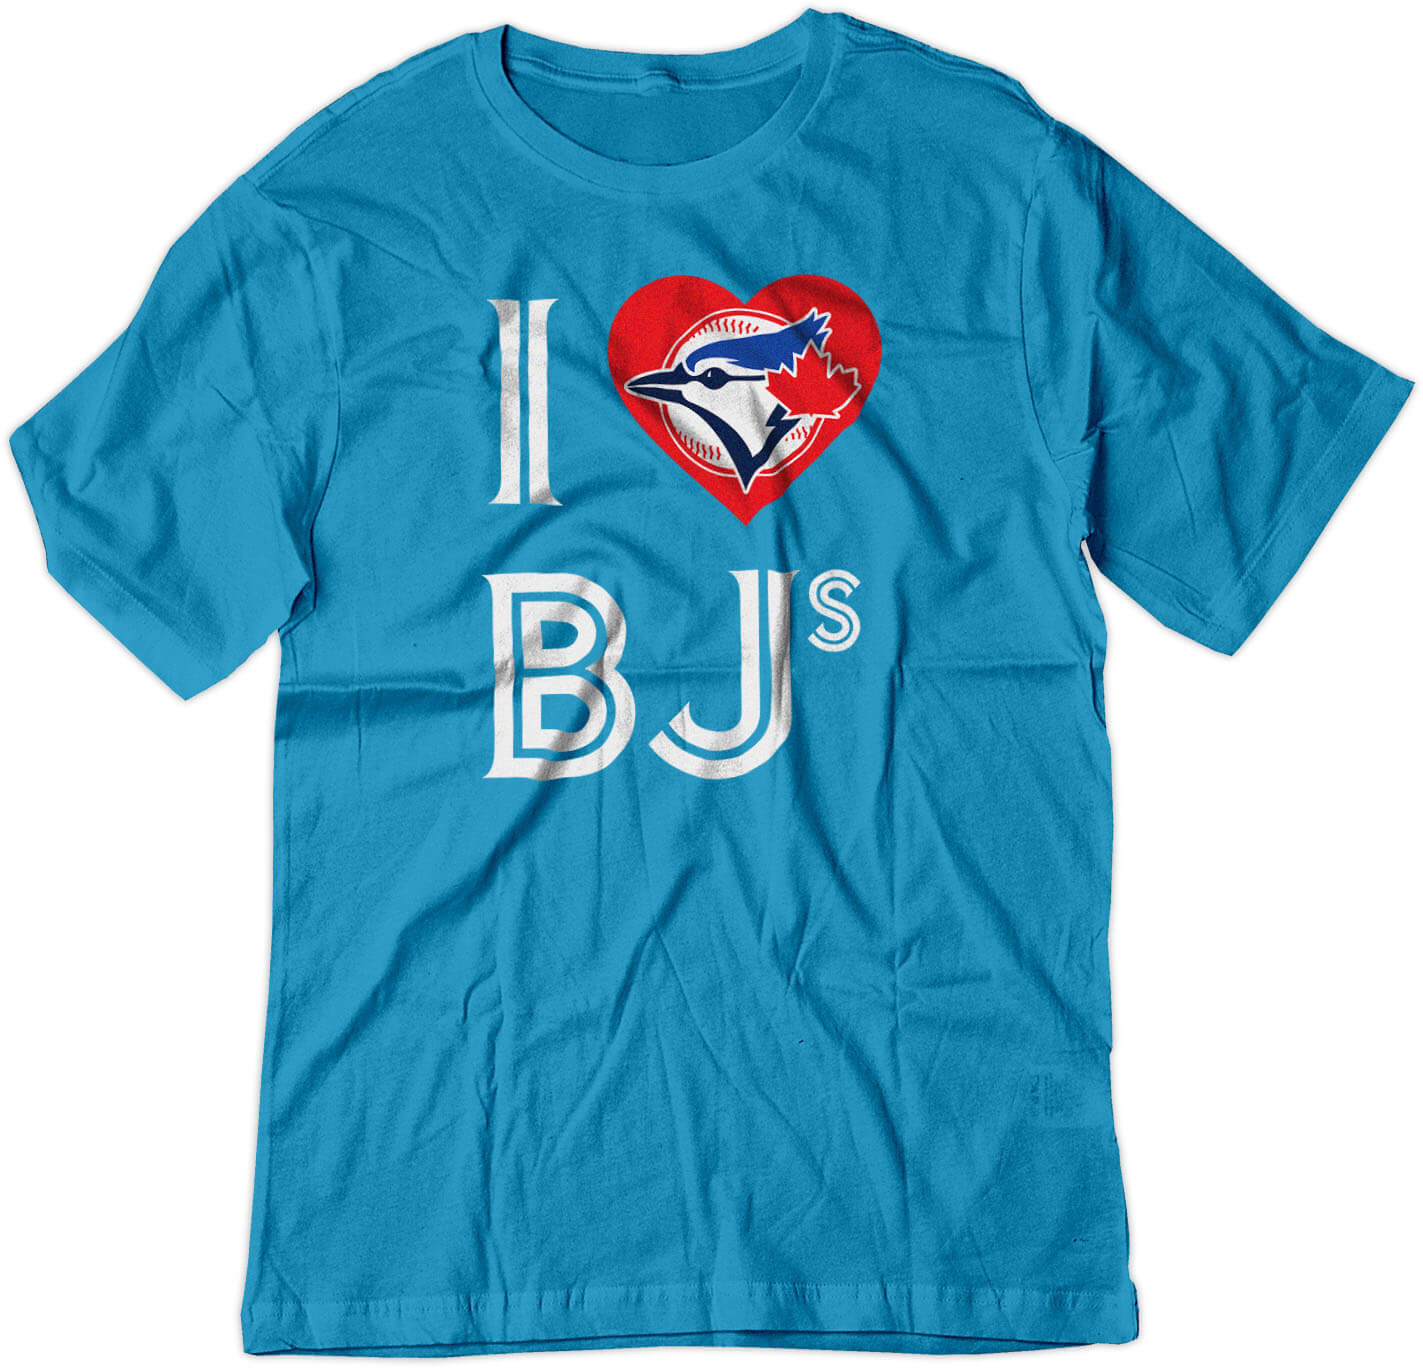 BSW Men's I Love BJ's Jays Baseball Sex Humor Heart Shirt